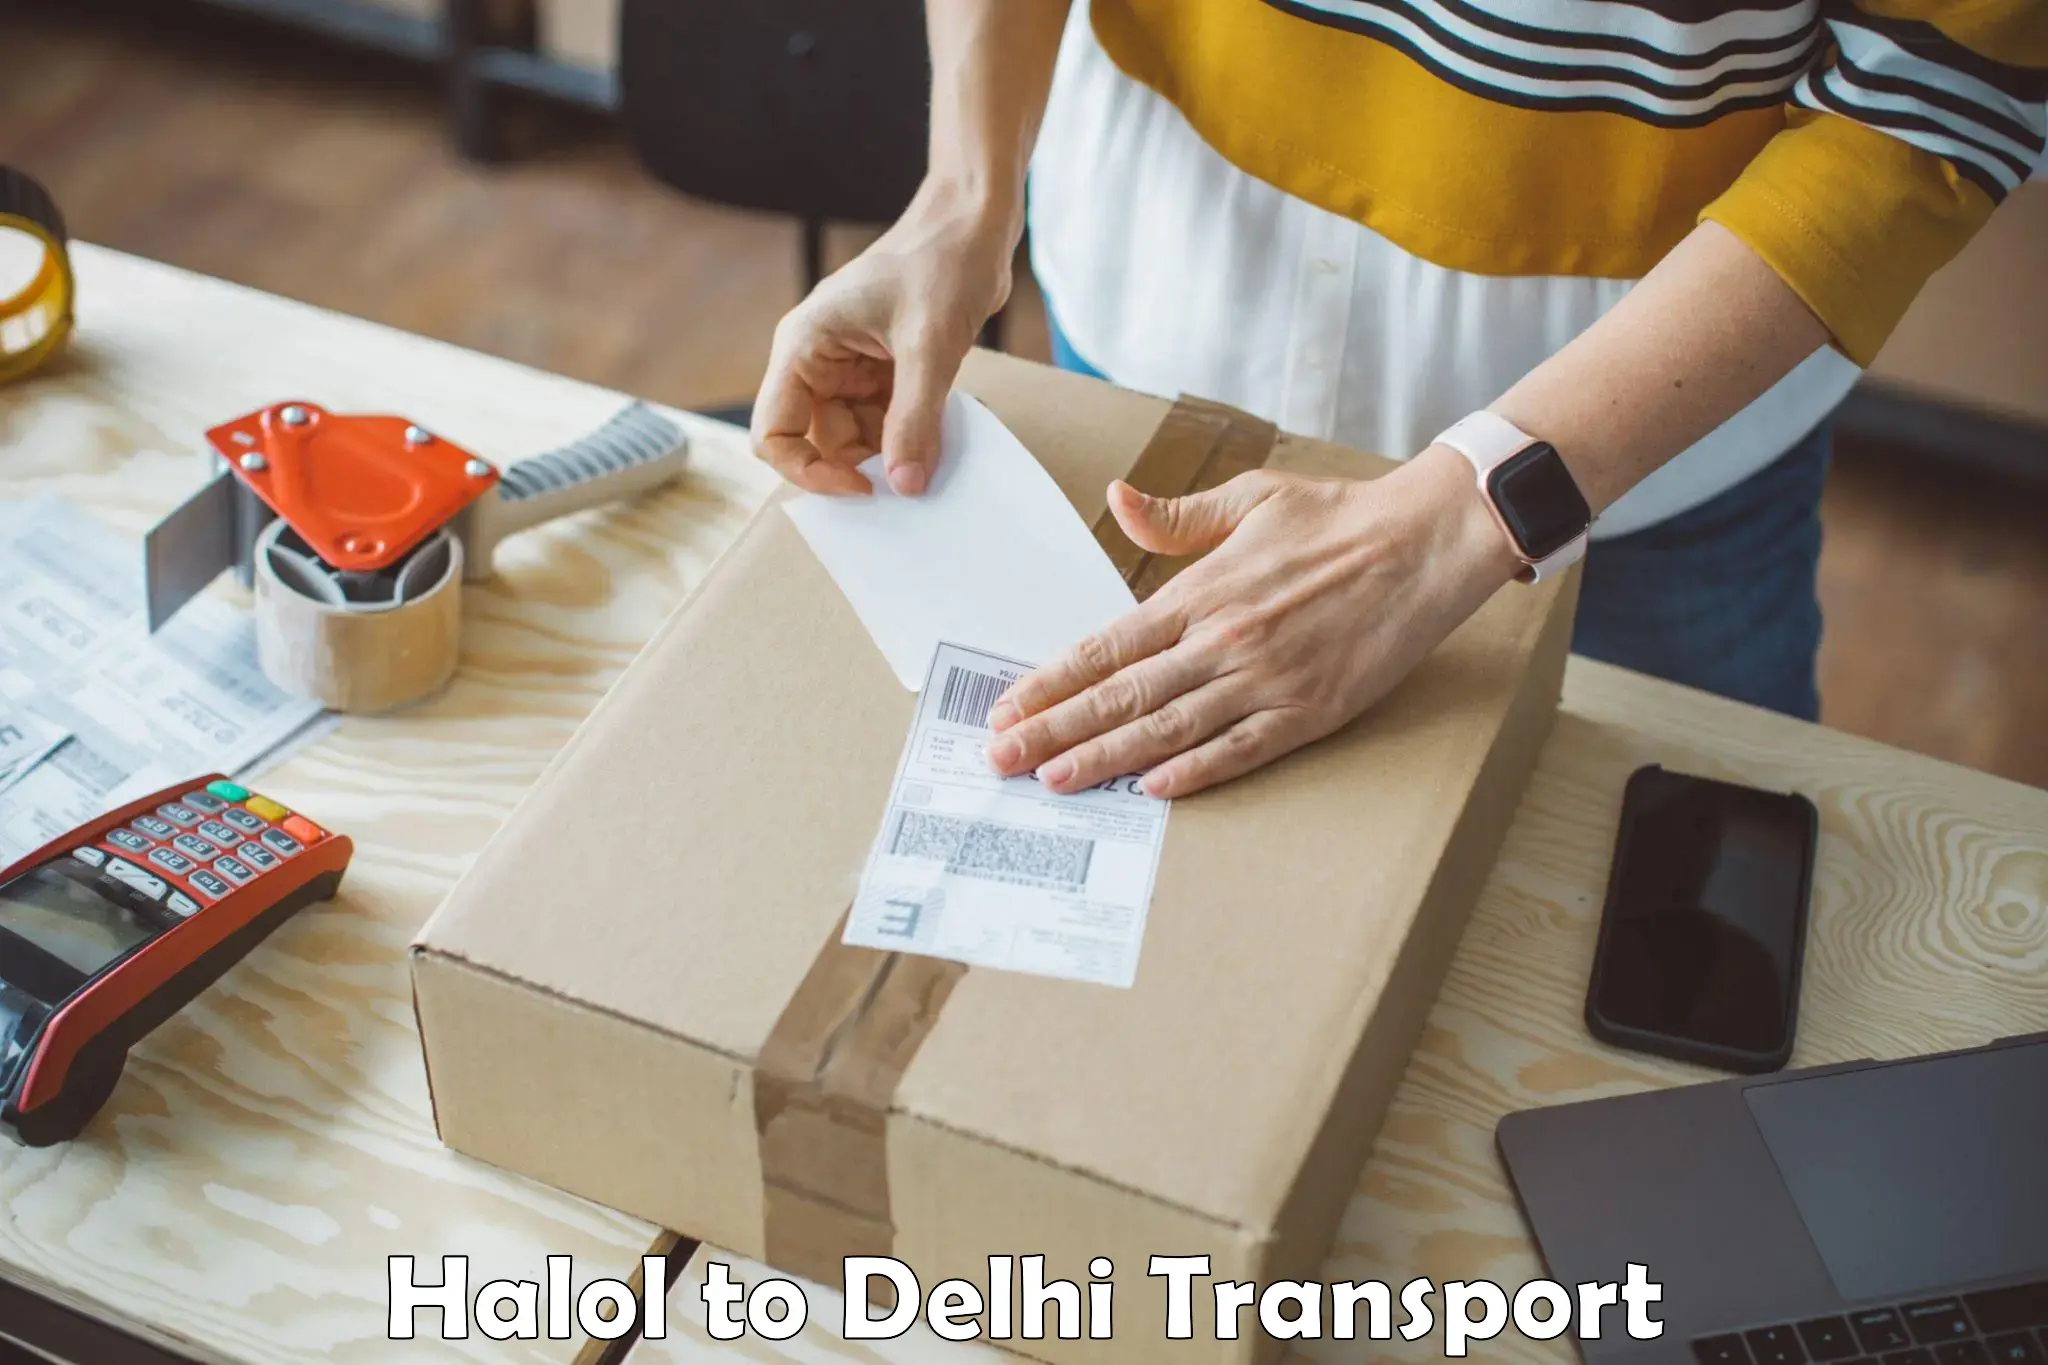 Bike shipping service Halol to Delhi